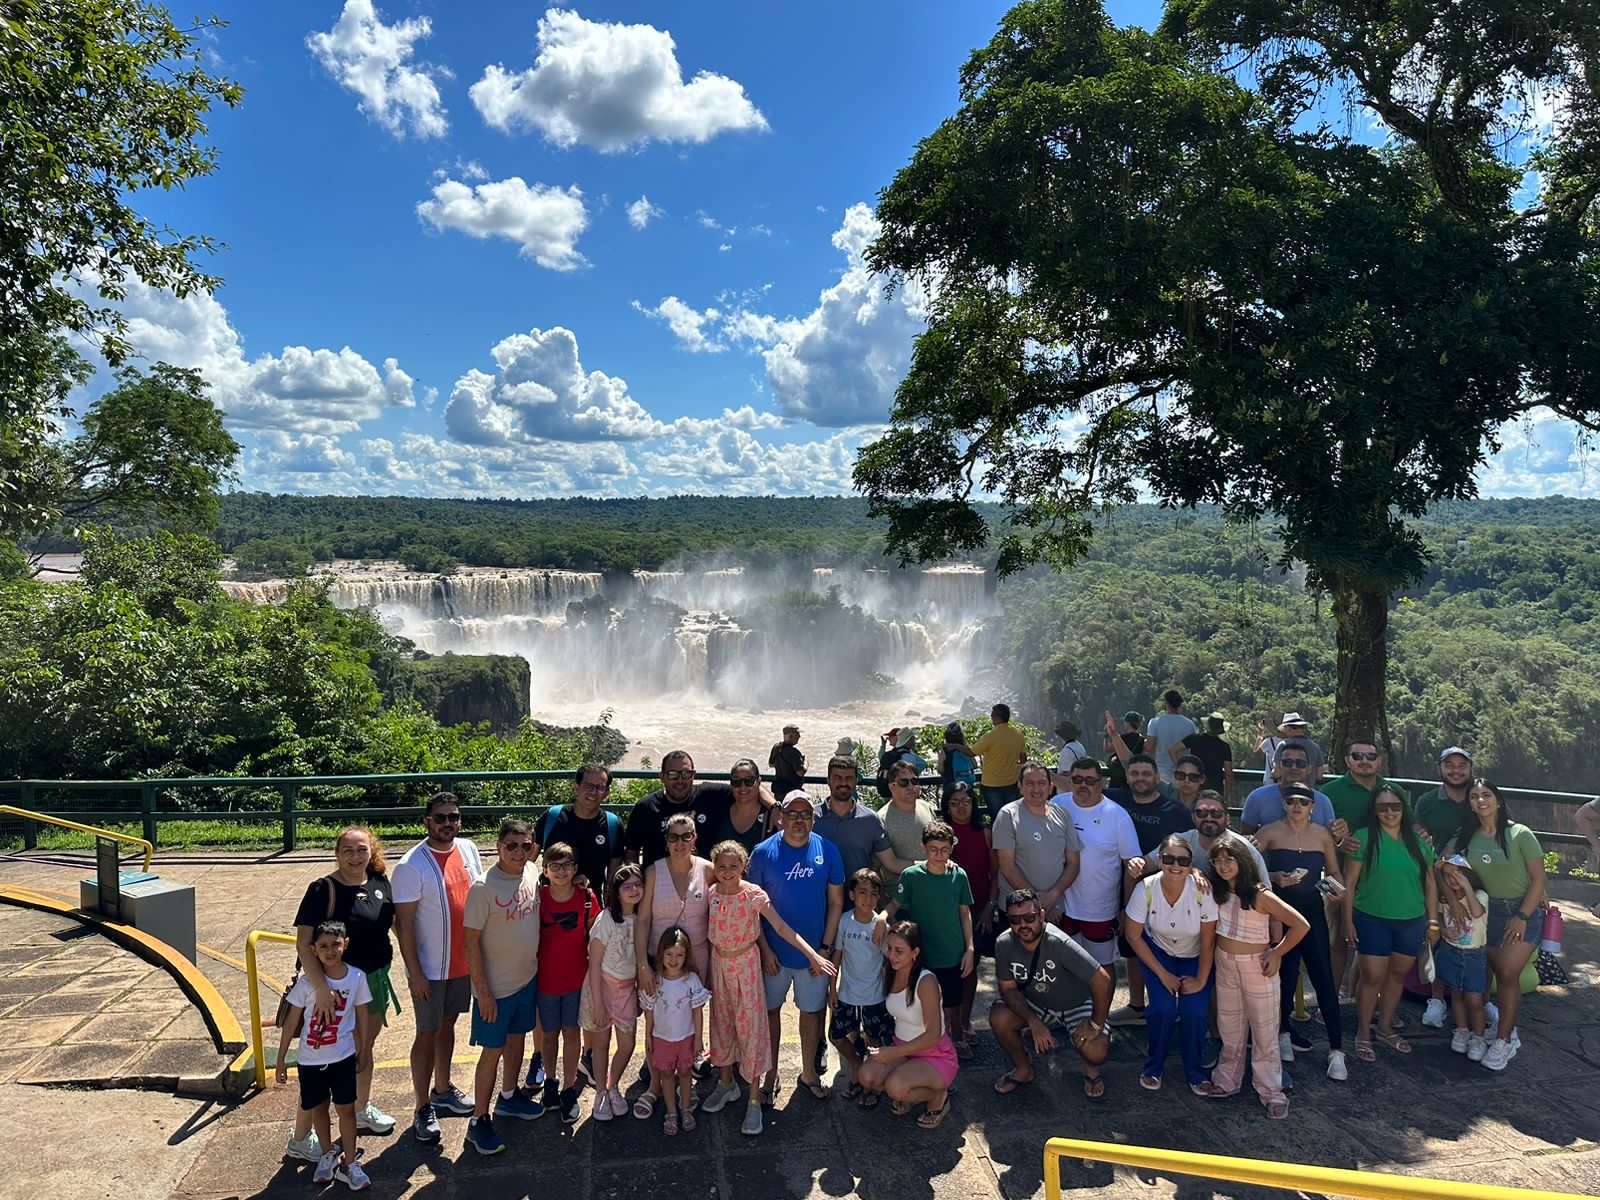 II Intercâmbio Empresarial: Uma Jornada de Conexões e Aprendizado em Foz do Iguaçu/PR